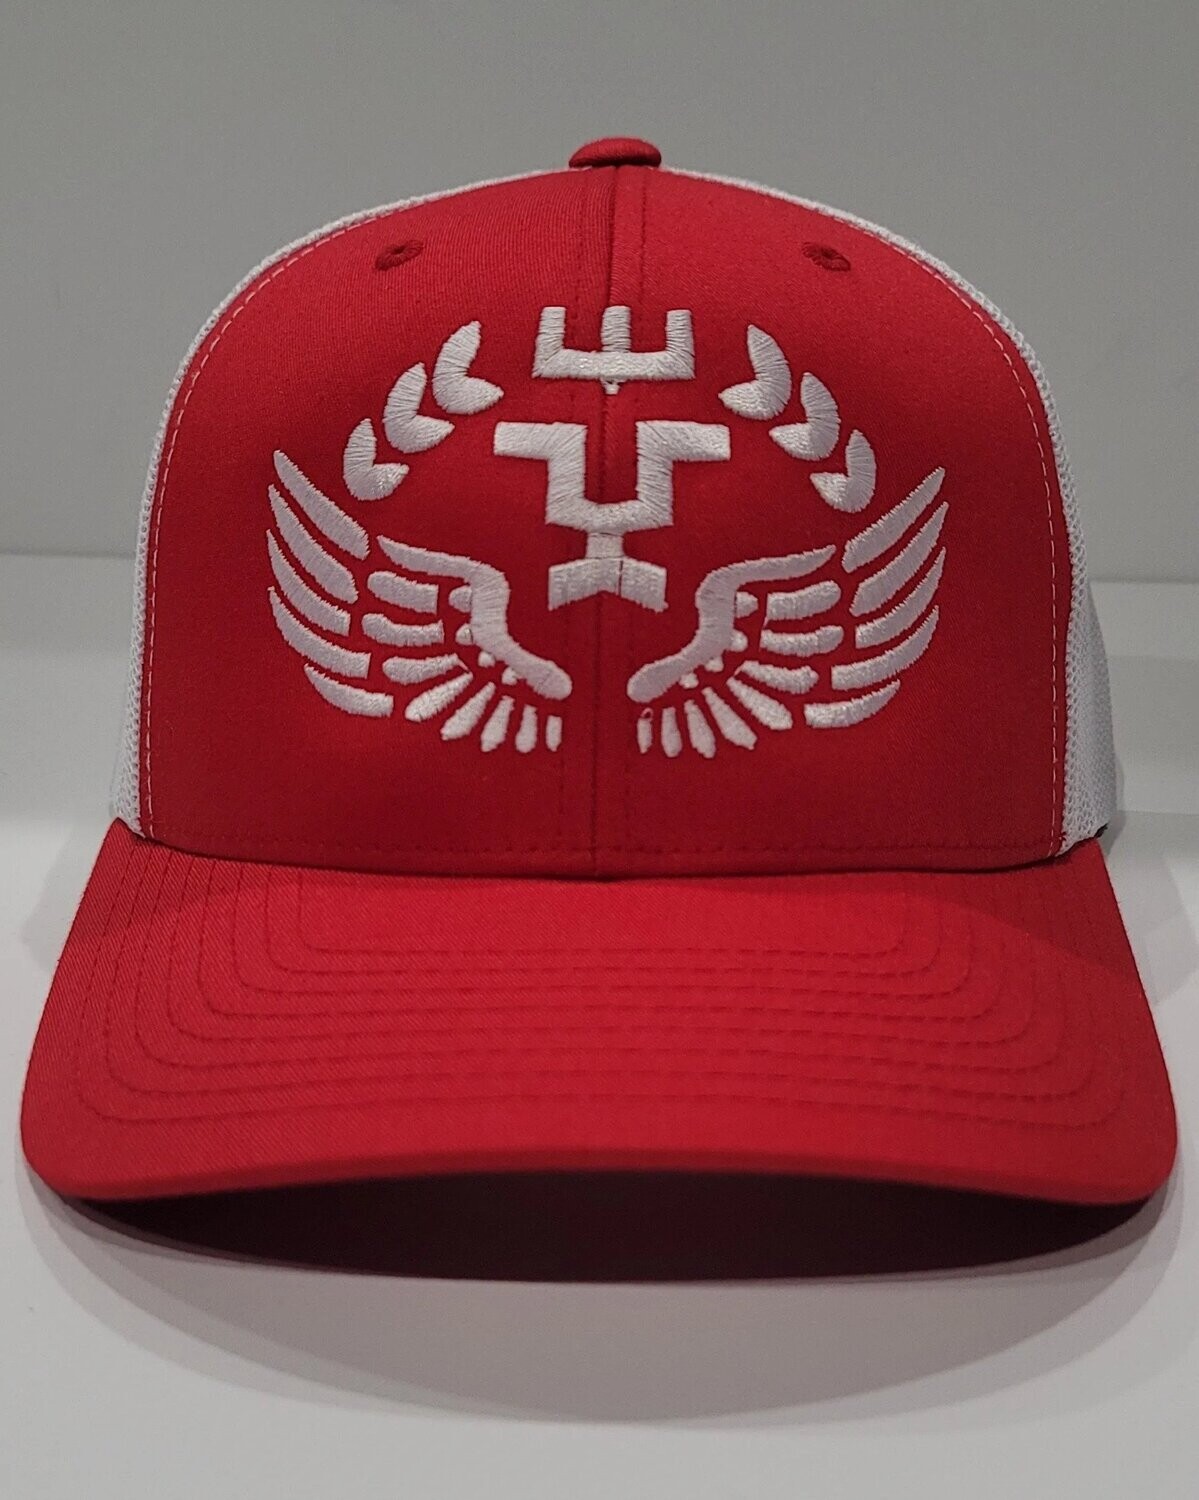 Titans Iconic Logo Hat Design 1